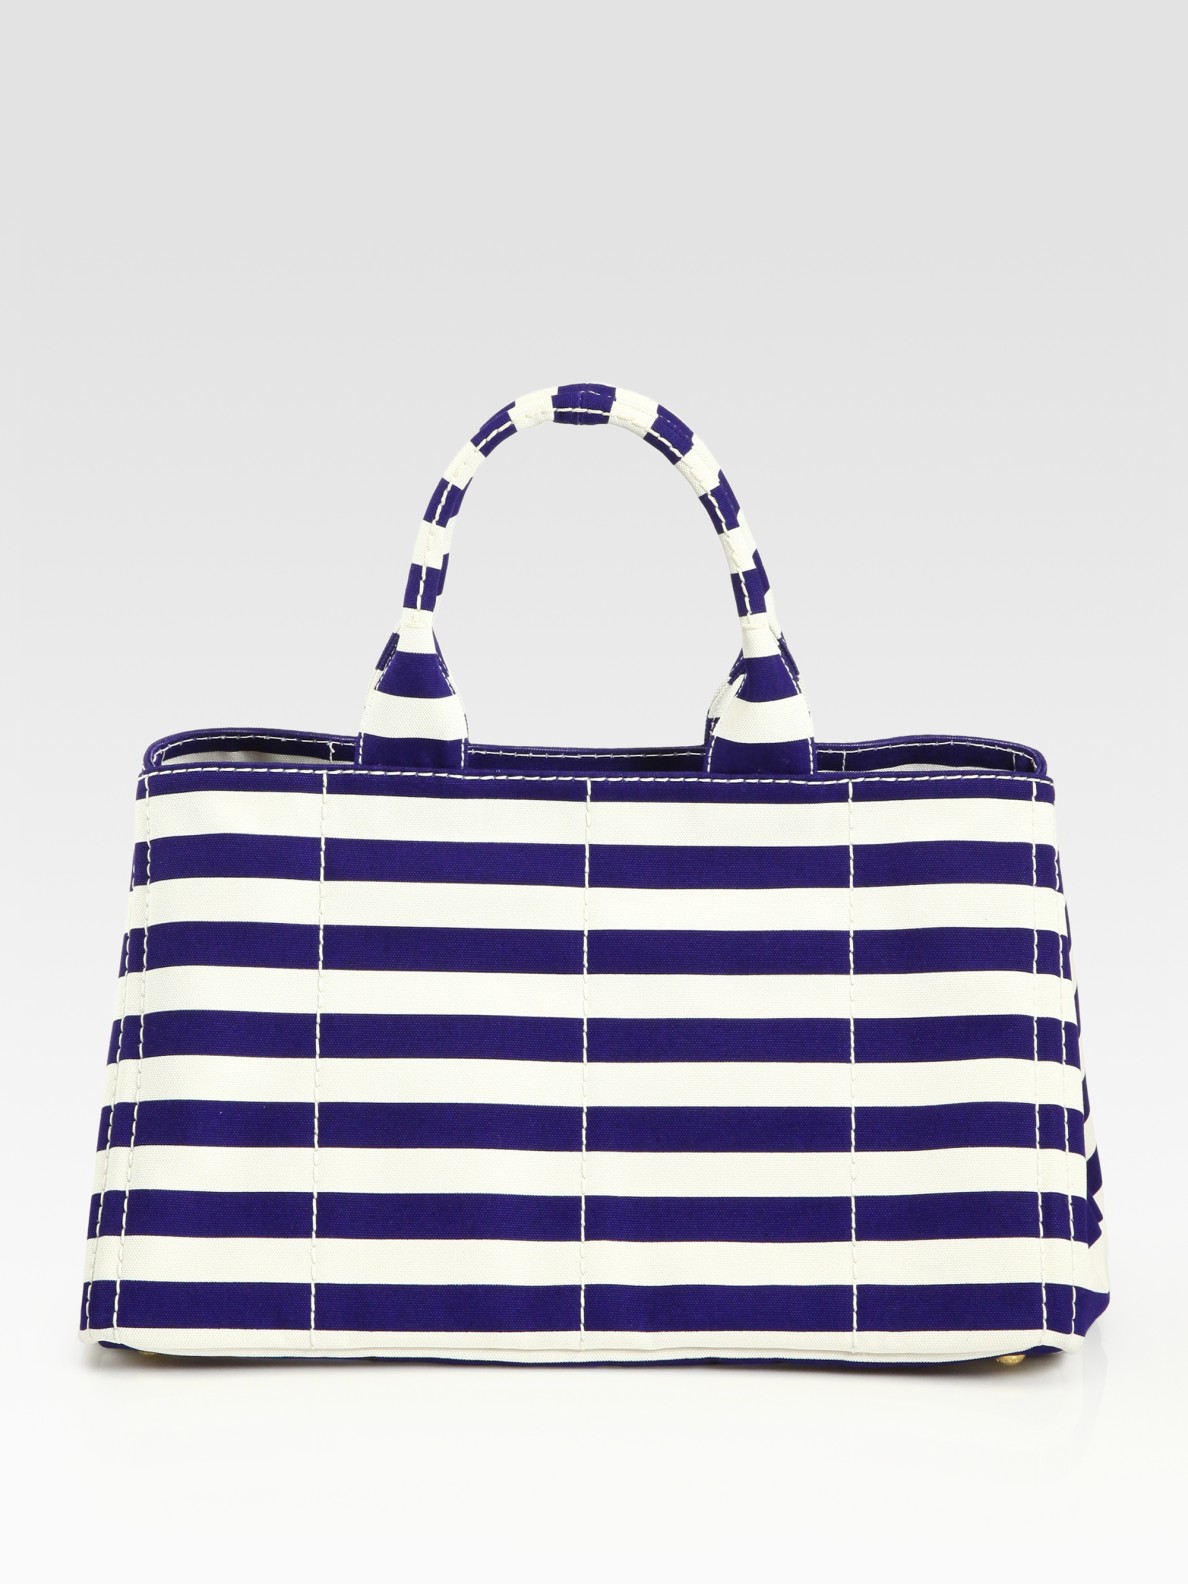 Prada Stripe Canvas Tote Bag in Blue - Lyst